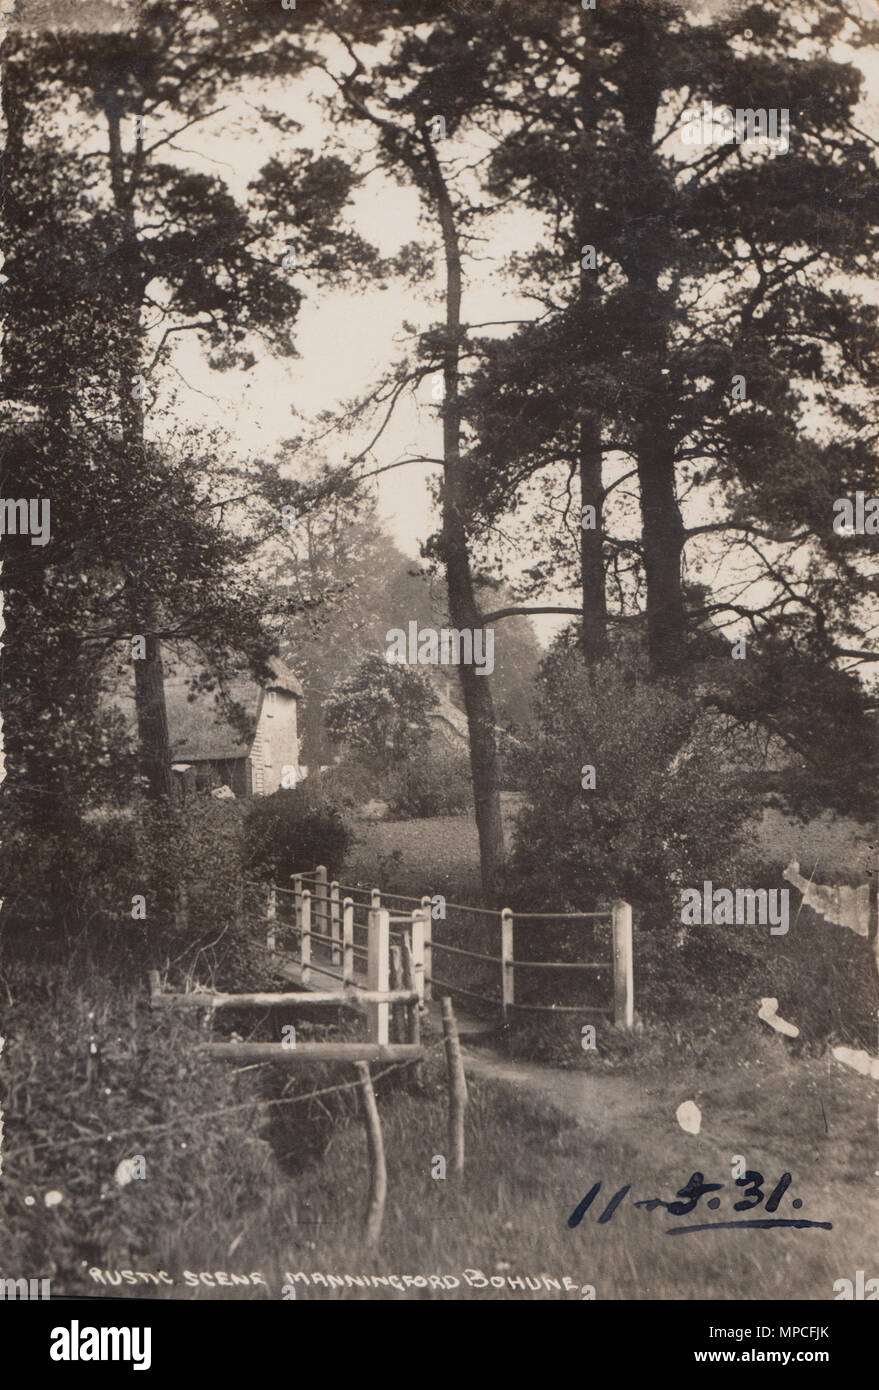 Vintage fotografia di un rustico di scena a Manningford Bohune nel 1931 Foto Stock